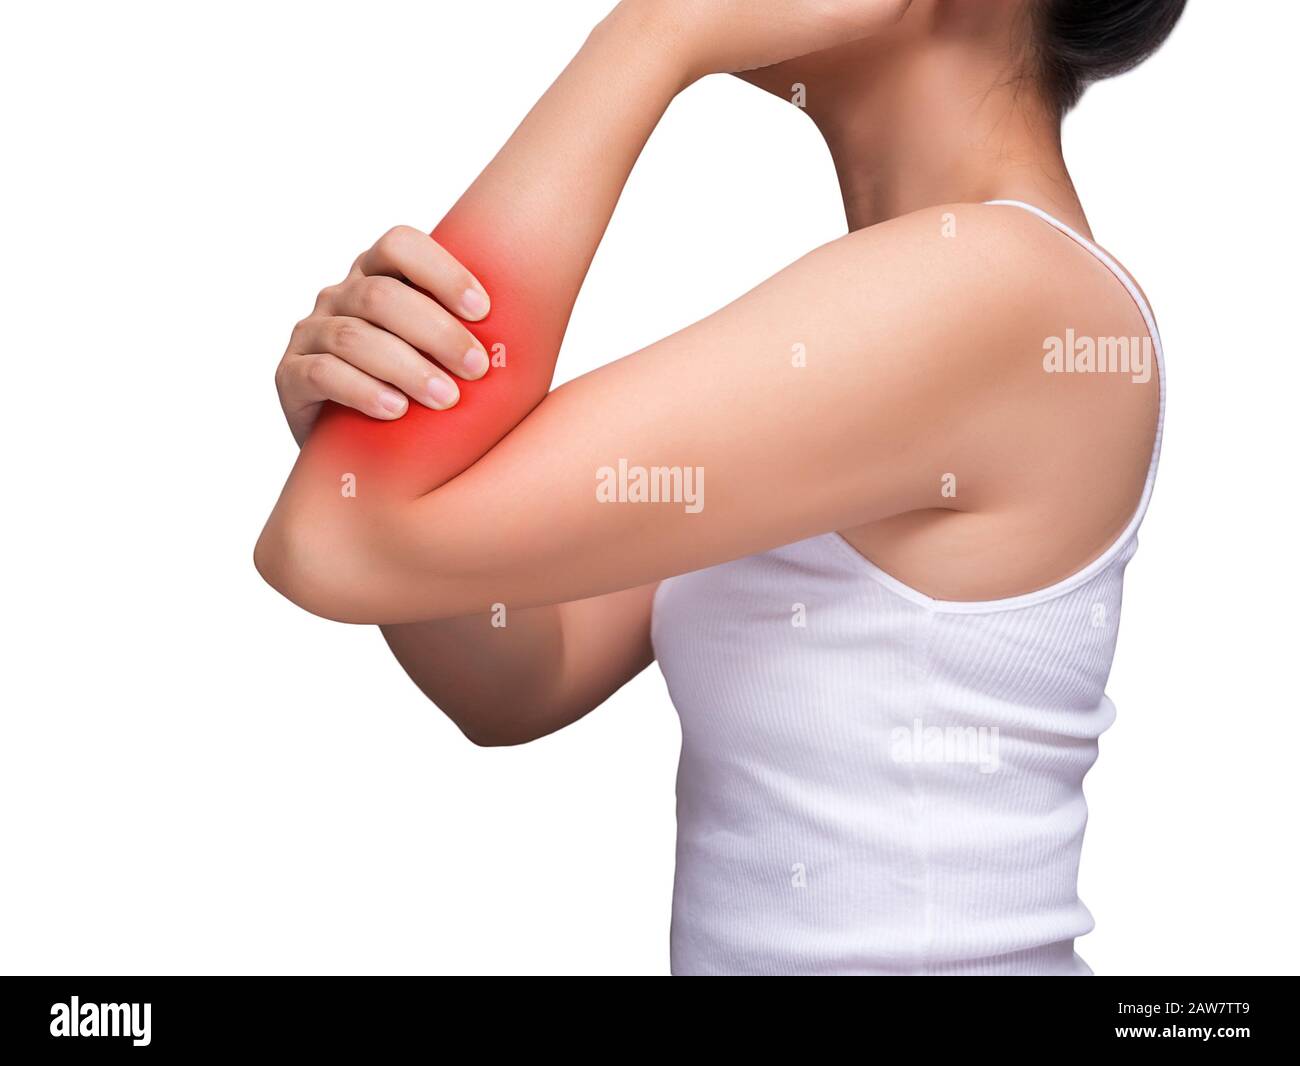 donna che soffre di dolore al braccio, dolore ai muscoli del braccio. colore rosso evidenzia al braccio , muscoli del braccio isolati su sfondo bianco. assistenza sanitaria e medica Foto Stock